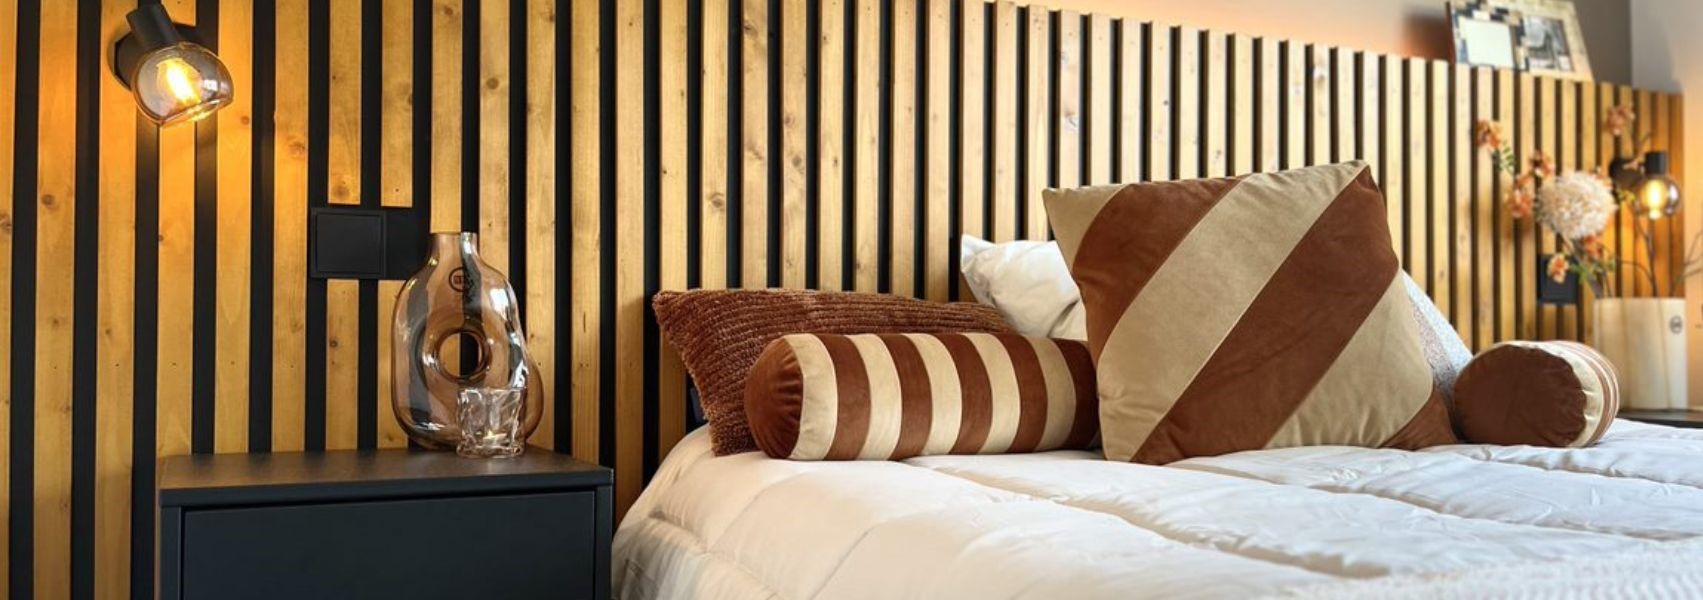 romantische slaapkamer met houten paneel